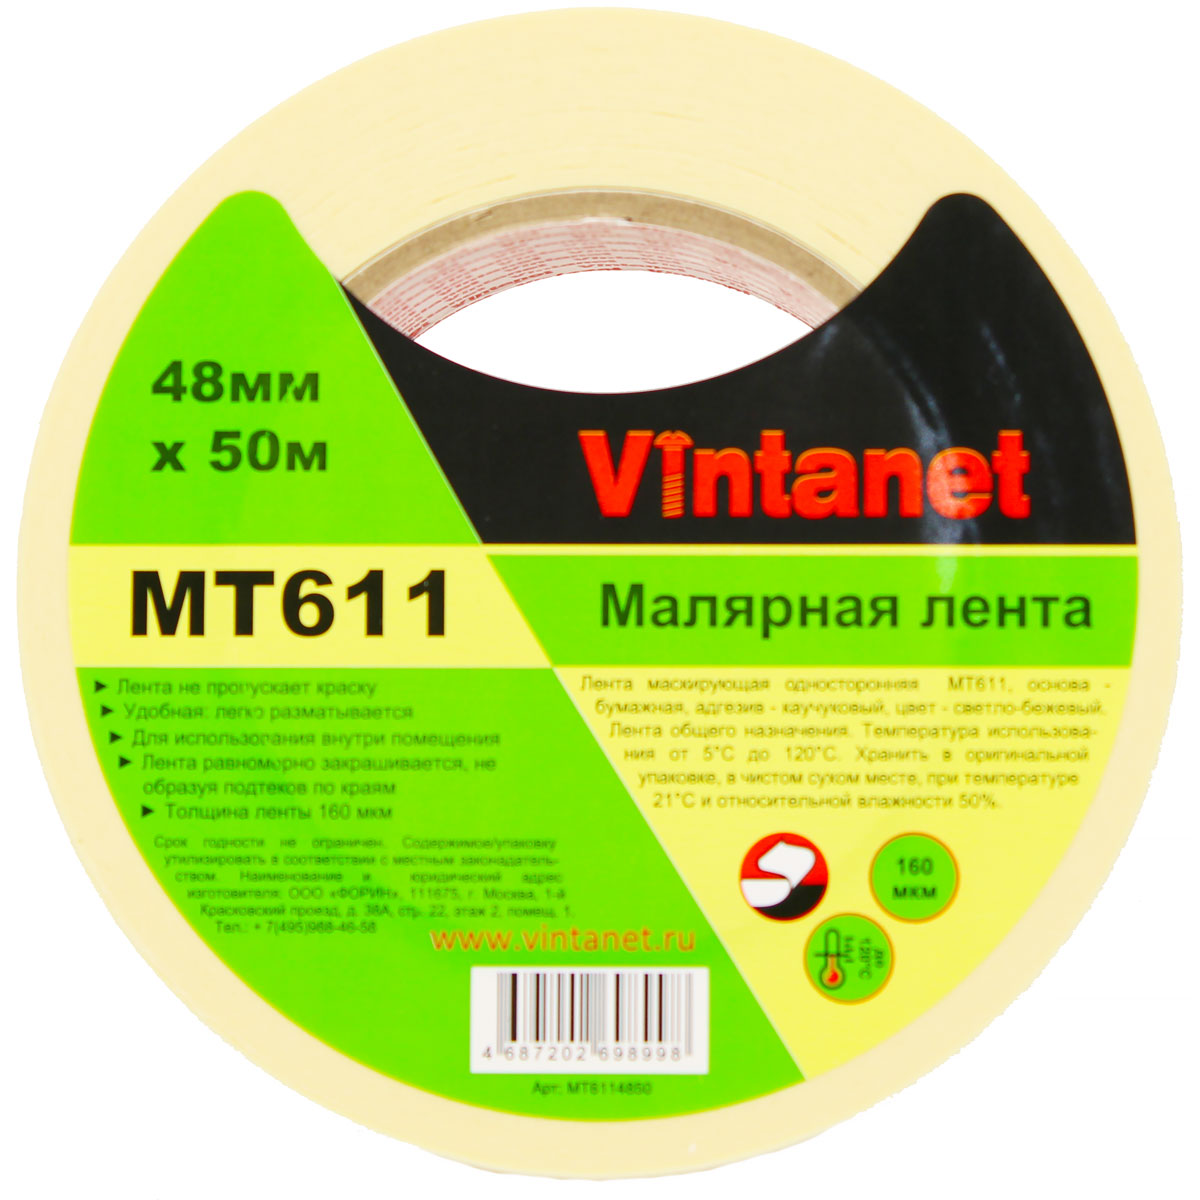 Лента малярная высокотемпературная Vintanet MT611, 120 С, 160 мкм, 48мм х 50м, MT6114850 малярная креппированная клейкая лента staff